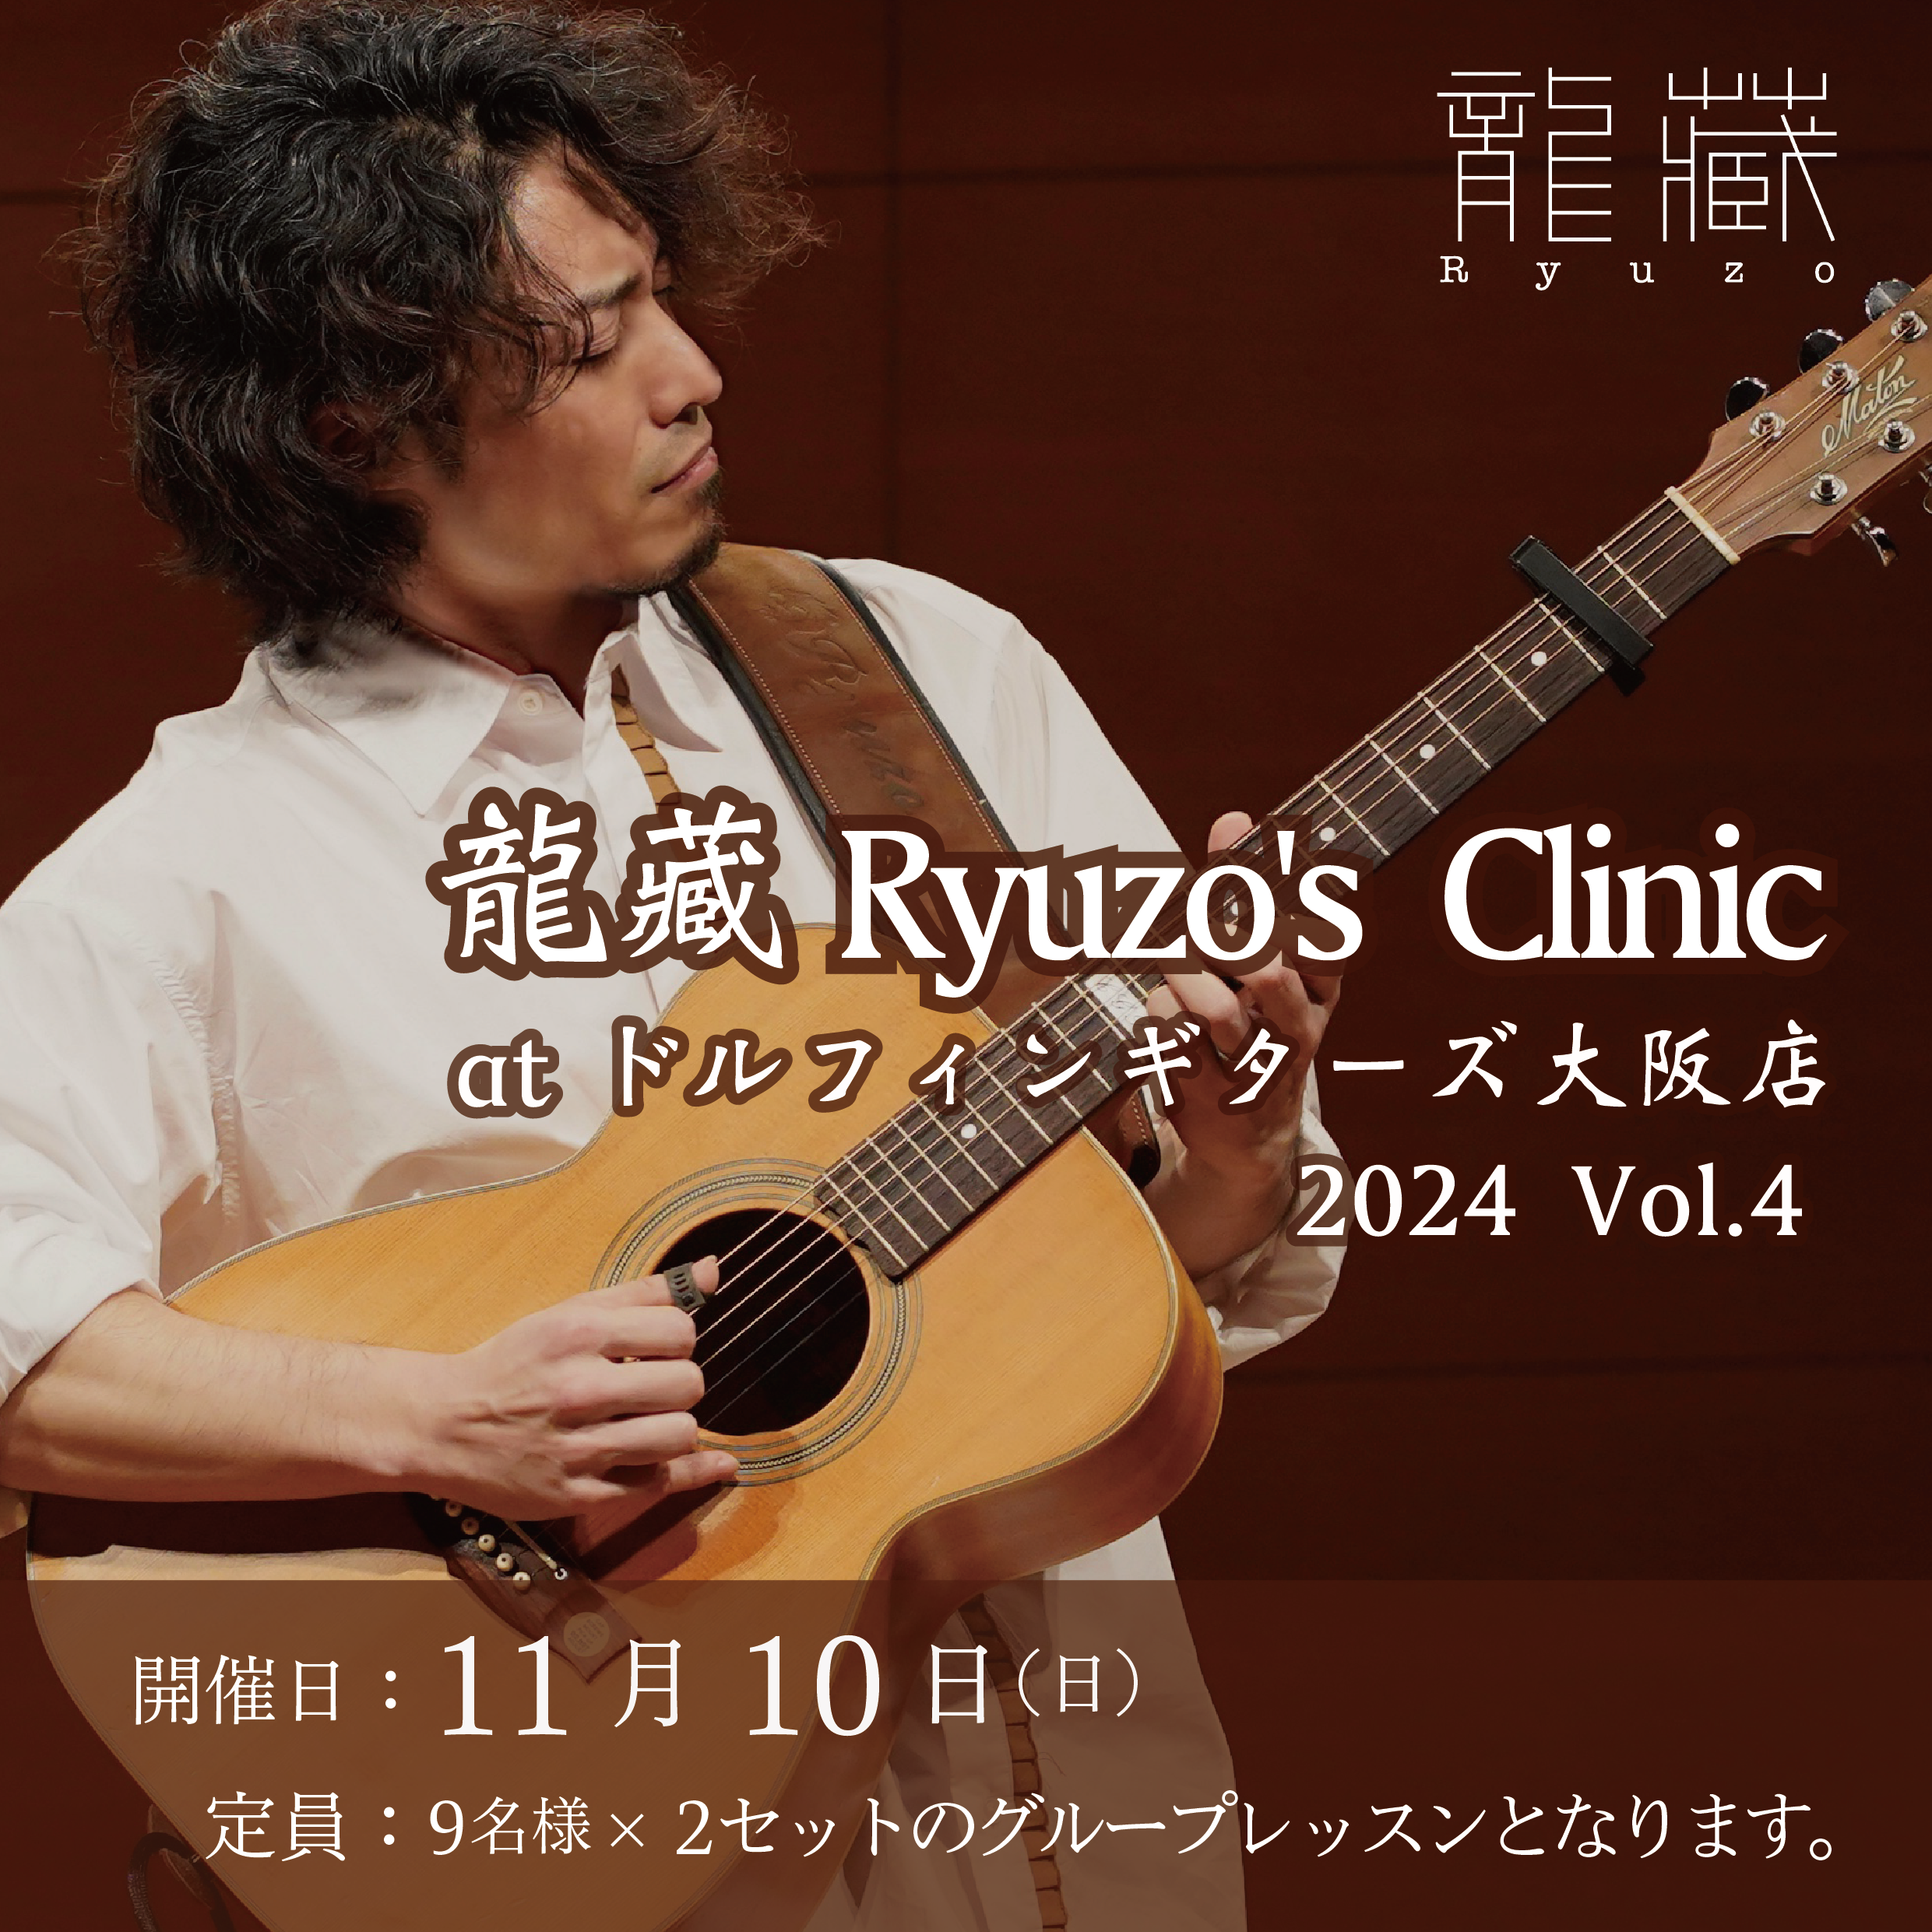 【大阪店】11/10(日) 龍藏Ryuzo's Clinic at ドルフィンギターズ大阪店 Vol.4のバナー